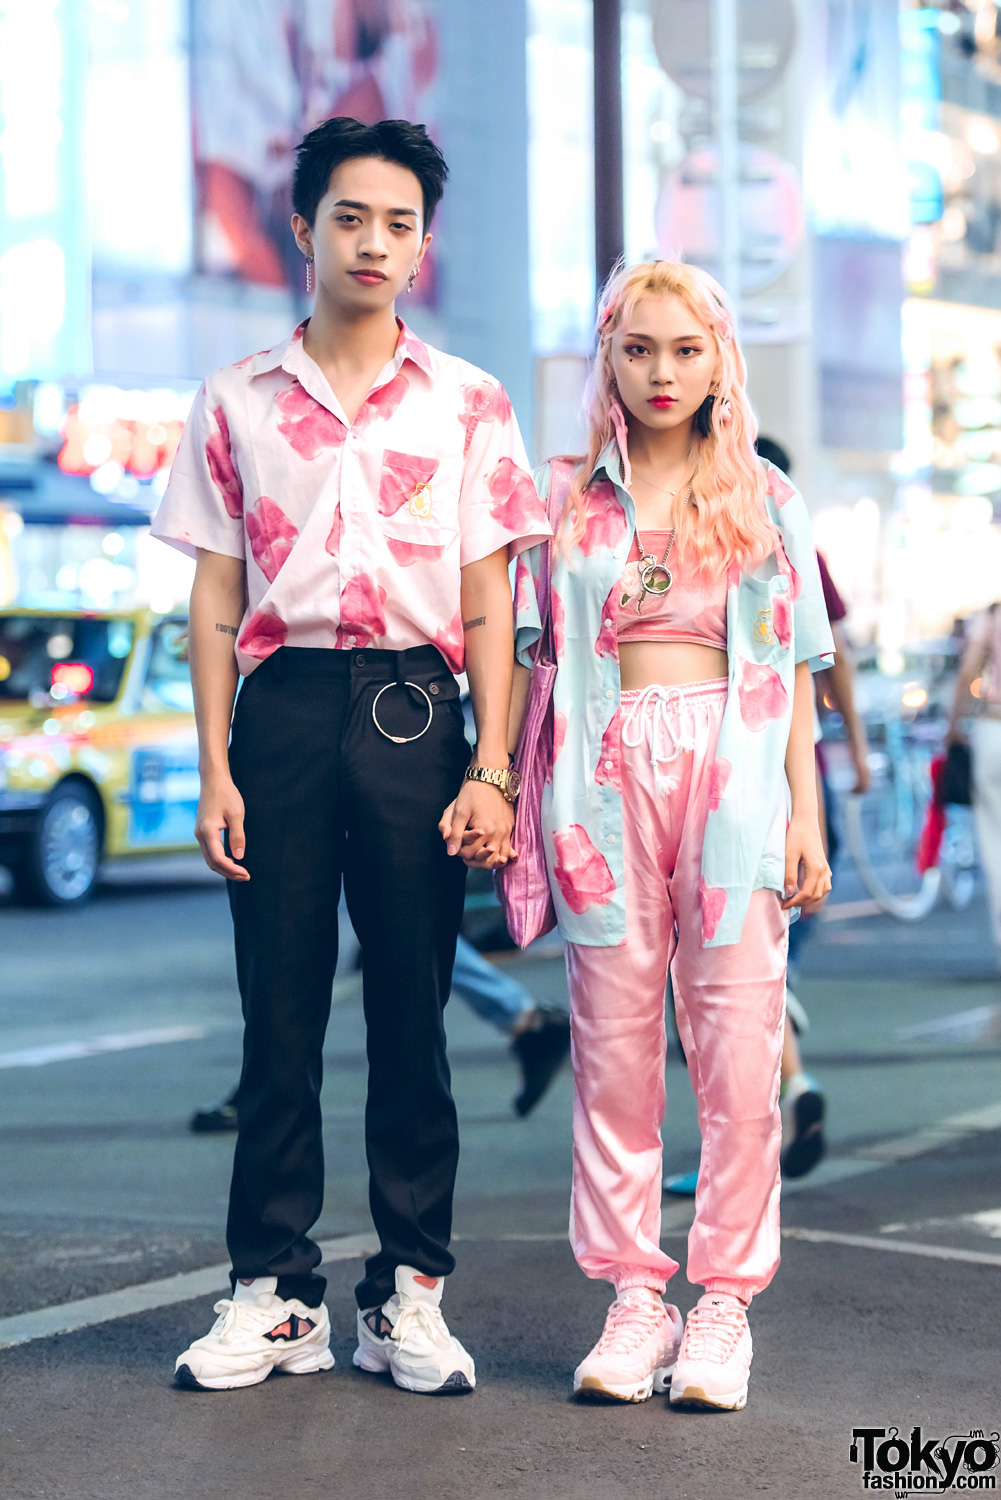 Pink Harajuku Street Styles w/ Matching Shirts, Doll Parts & Nike Air Max Sneakers